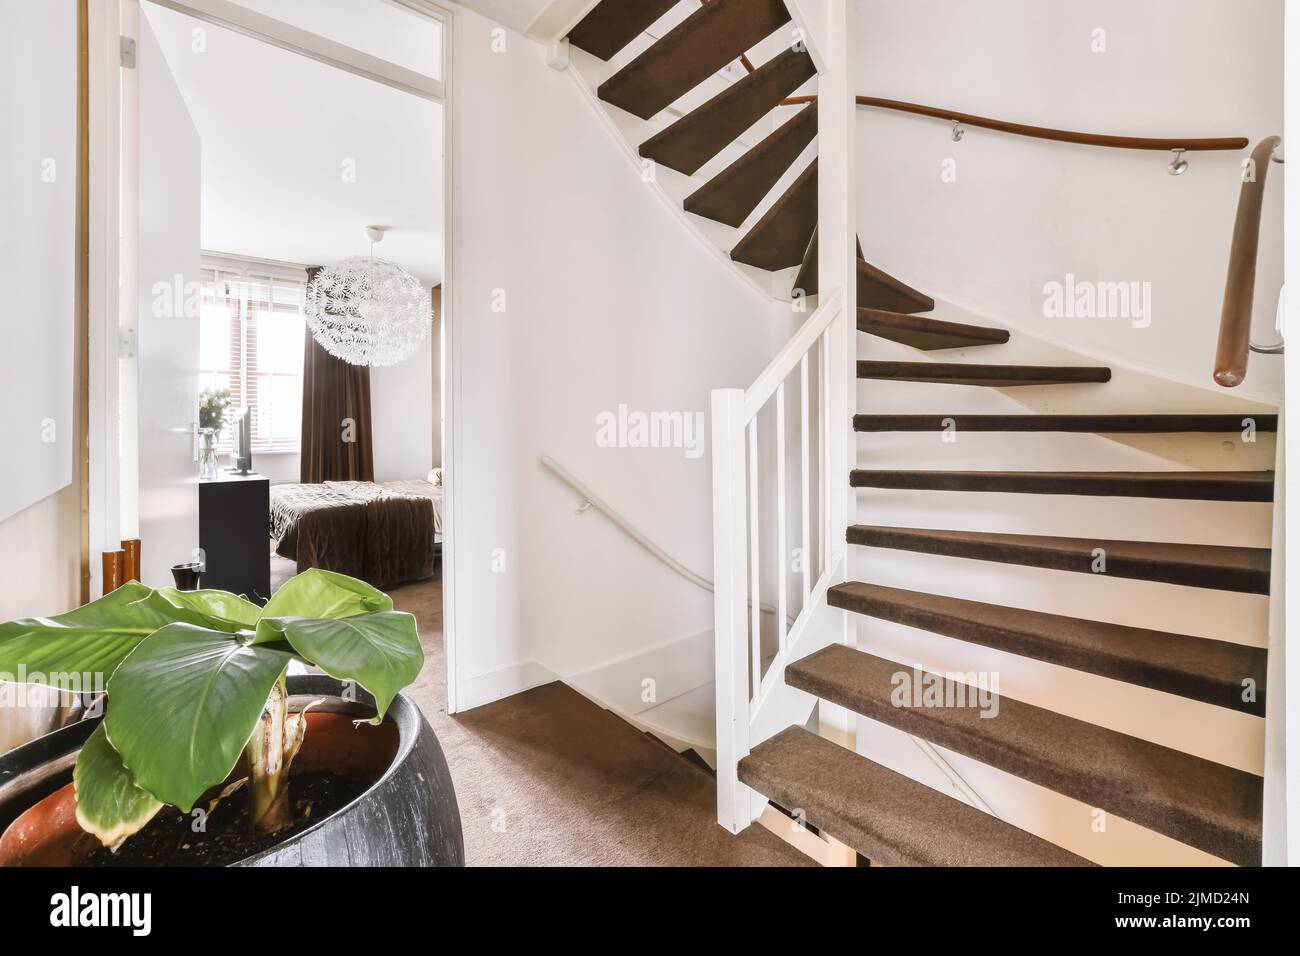 Interior de una casa con escaleras a un piso superior en un ambiente luminoso Foto de stock